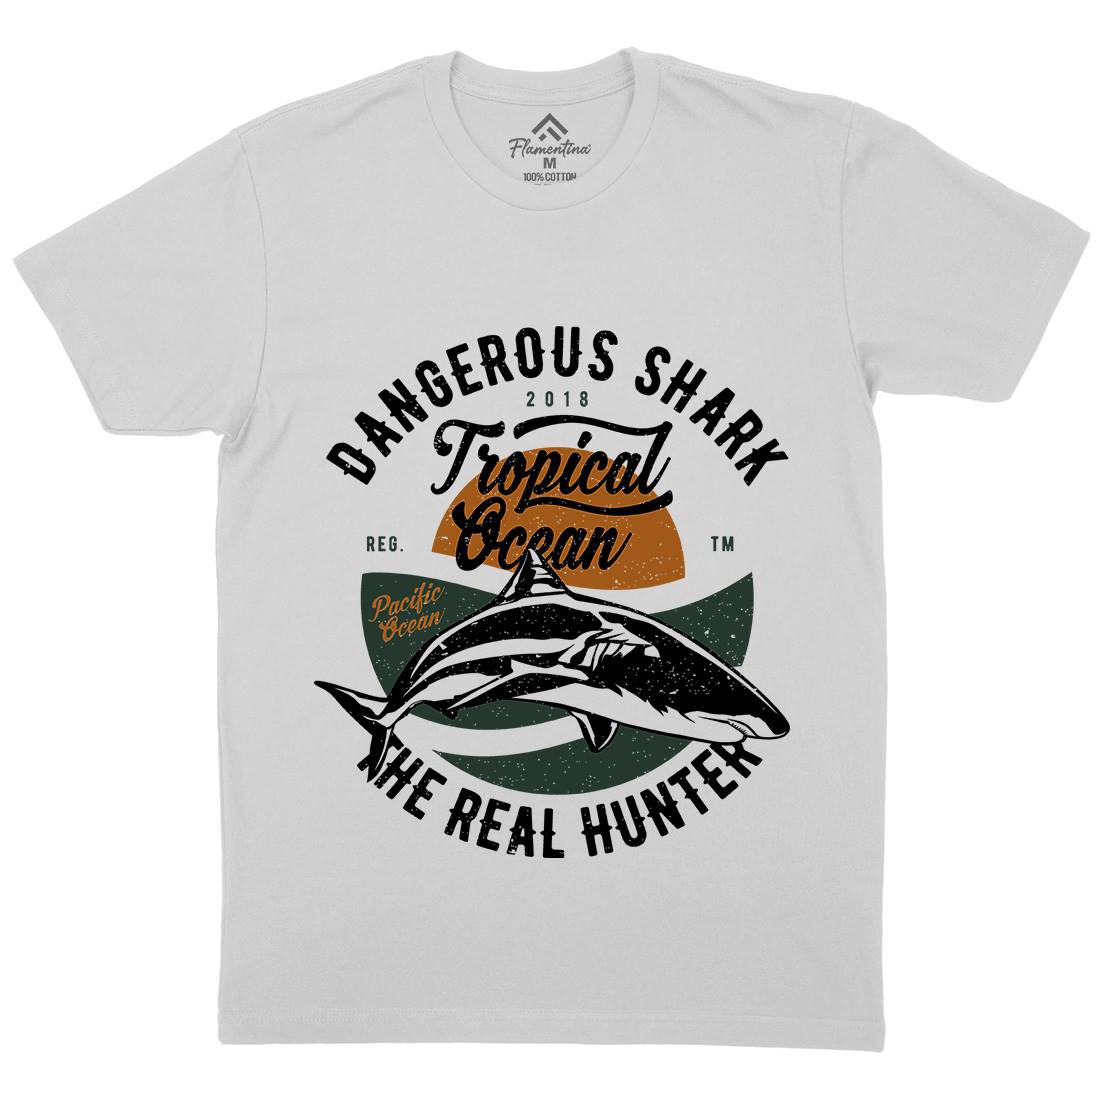 Dangerous Shark Mens Crew Neck T-Shirt Navy A643